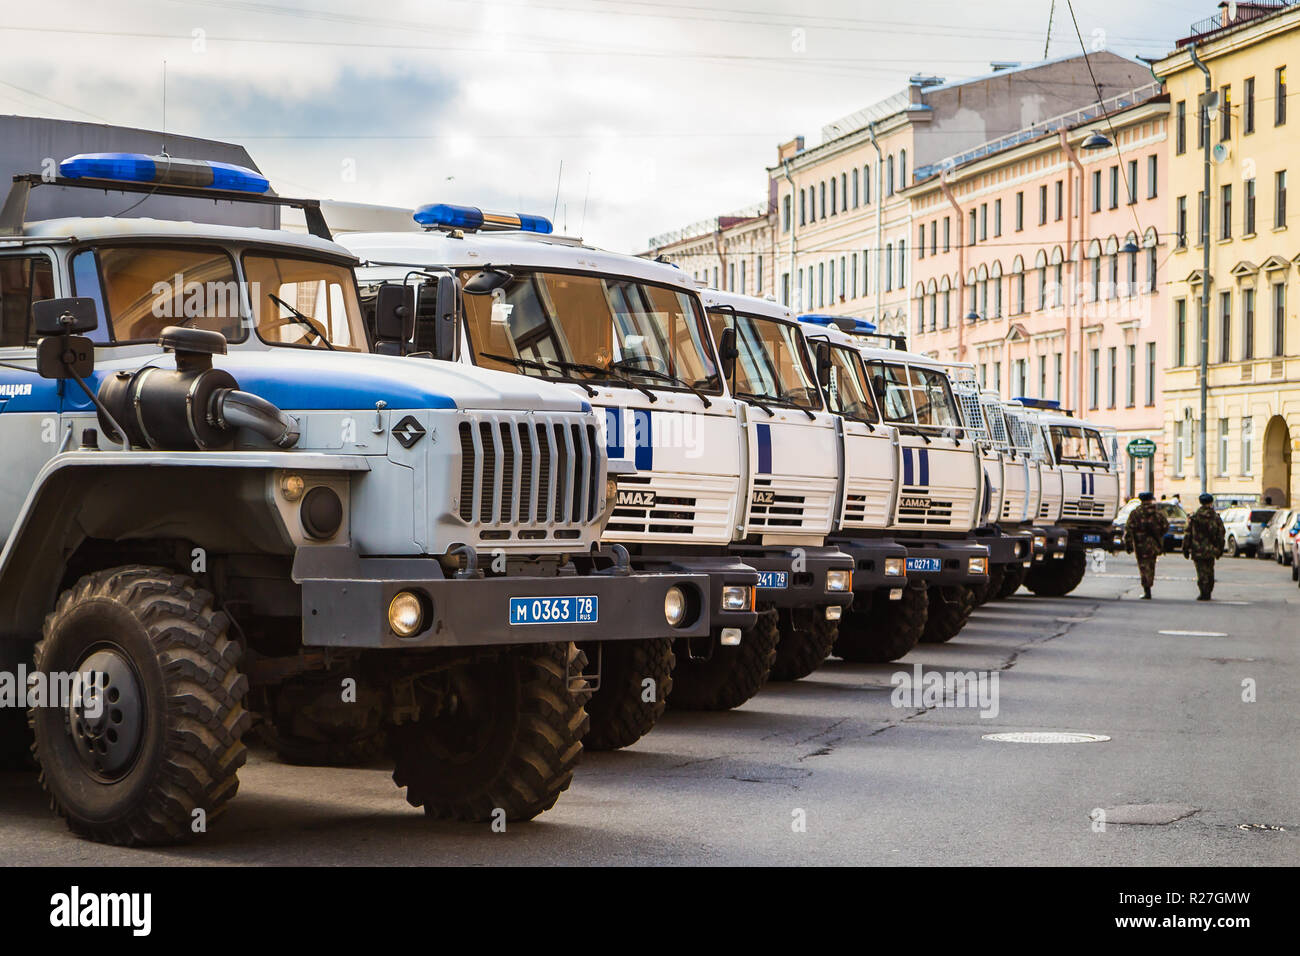 Ottobre 25, 2018 - San Pietroburgo, Russia - polizia auto parcheggiata su una strada Foto Stock